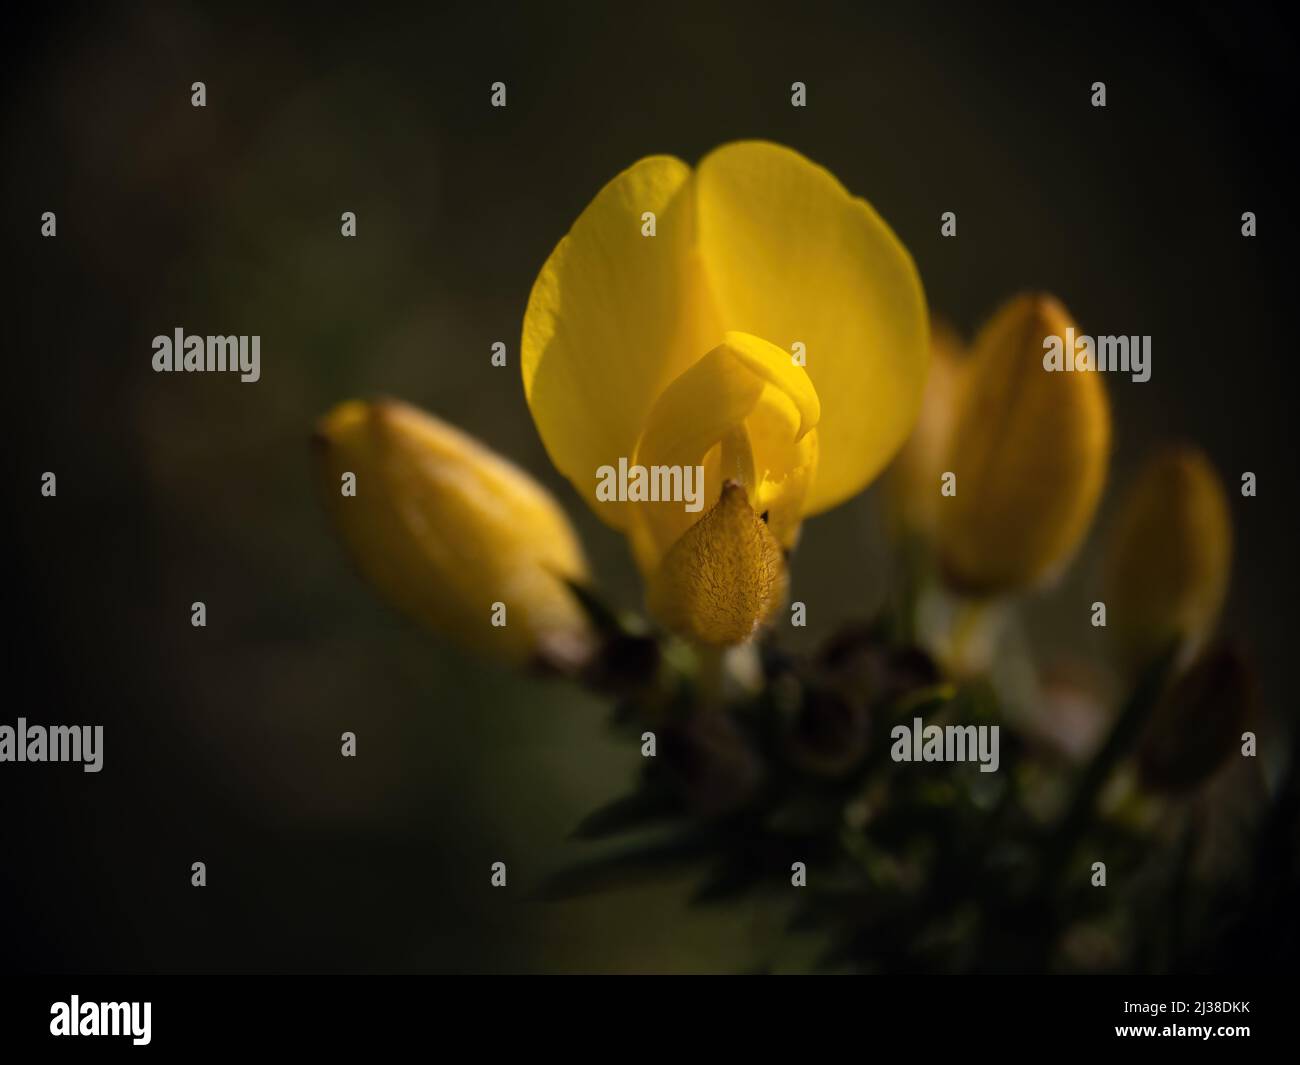 Detail der gelben Blume des Gorse-Busches - Ulex Europaeus. Dunkle Nahaufnahme mit geringer Schärfentiefe. Stockfoto